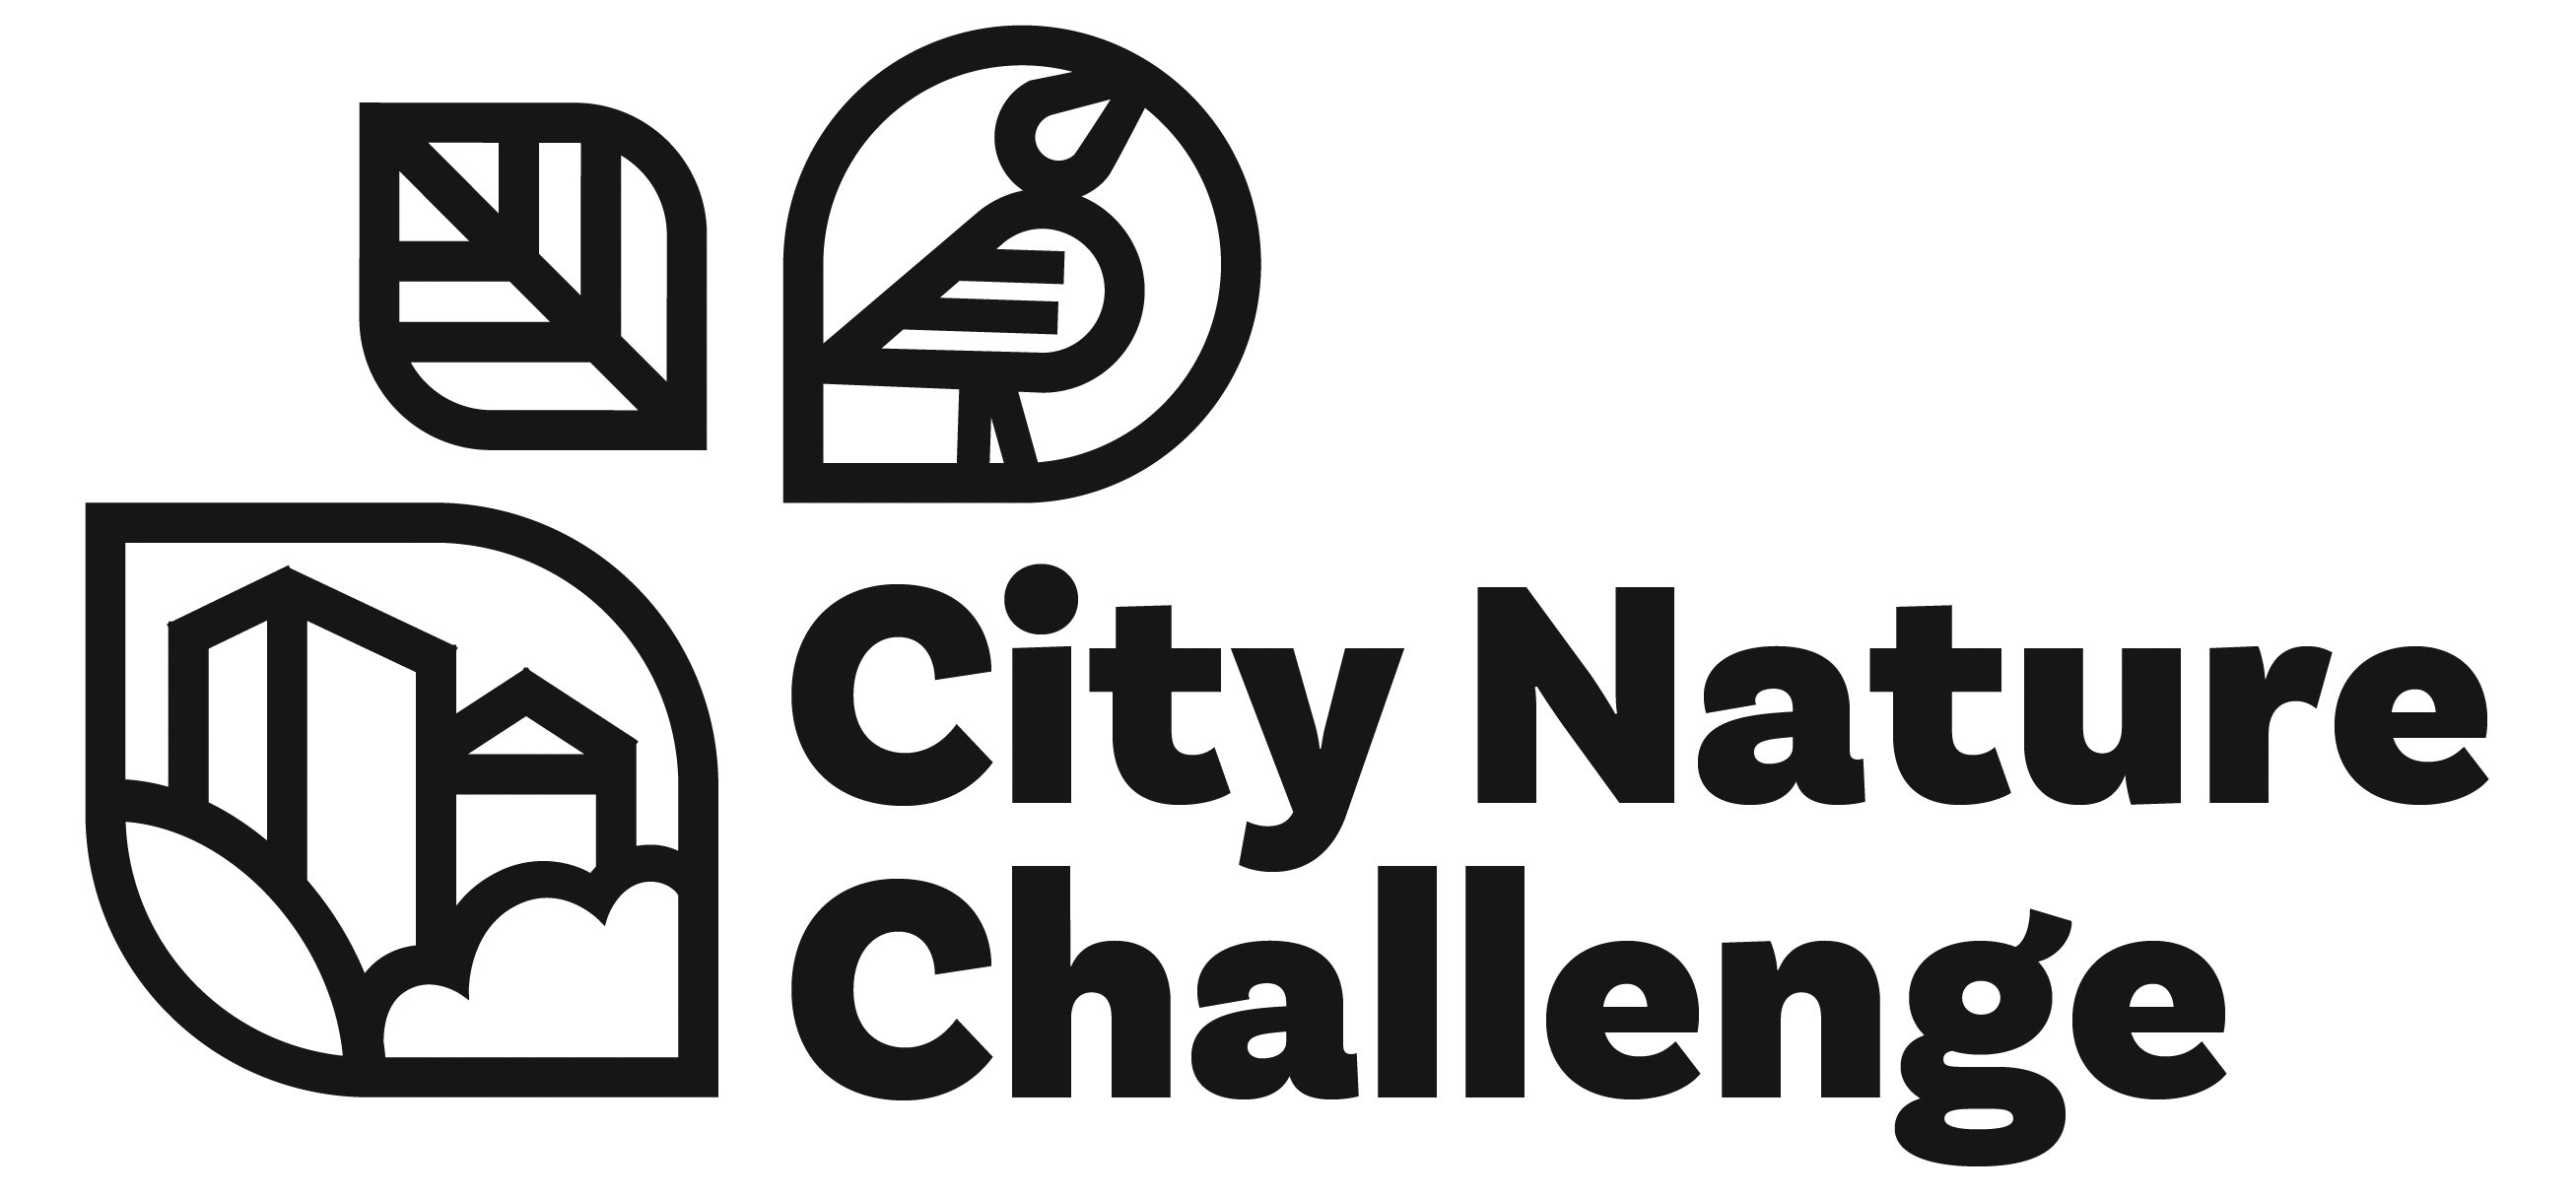 City Nature Challenge České Budějovice